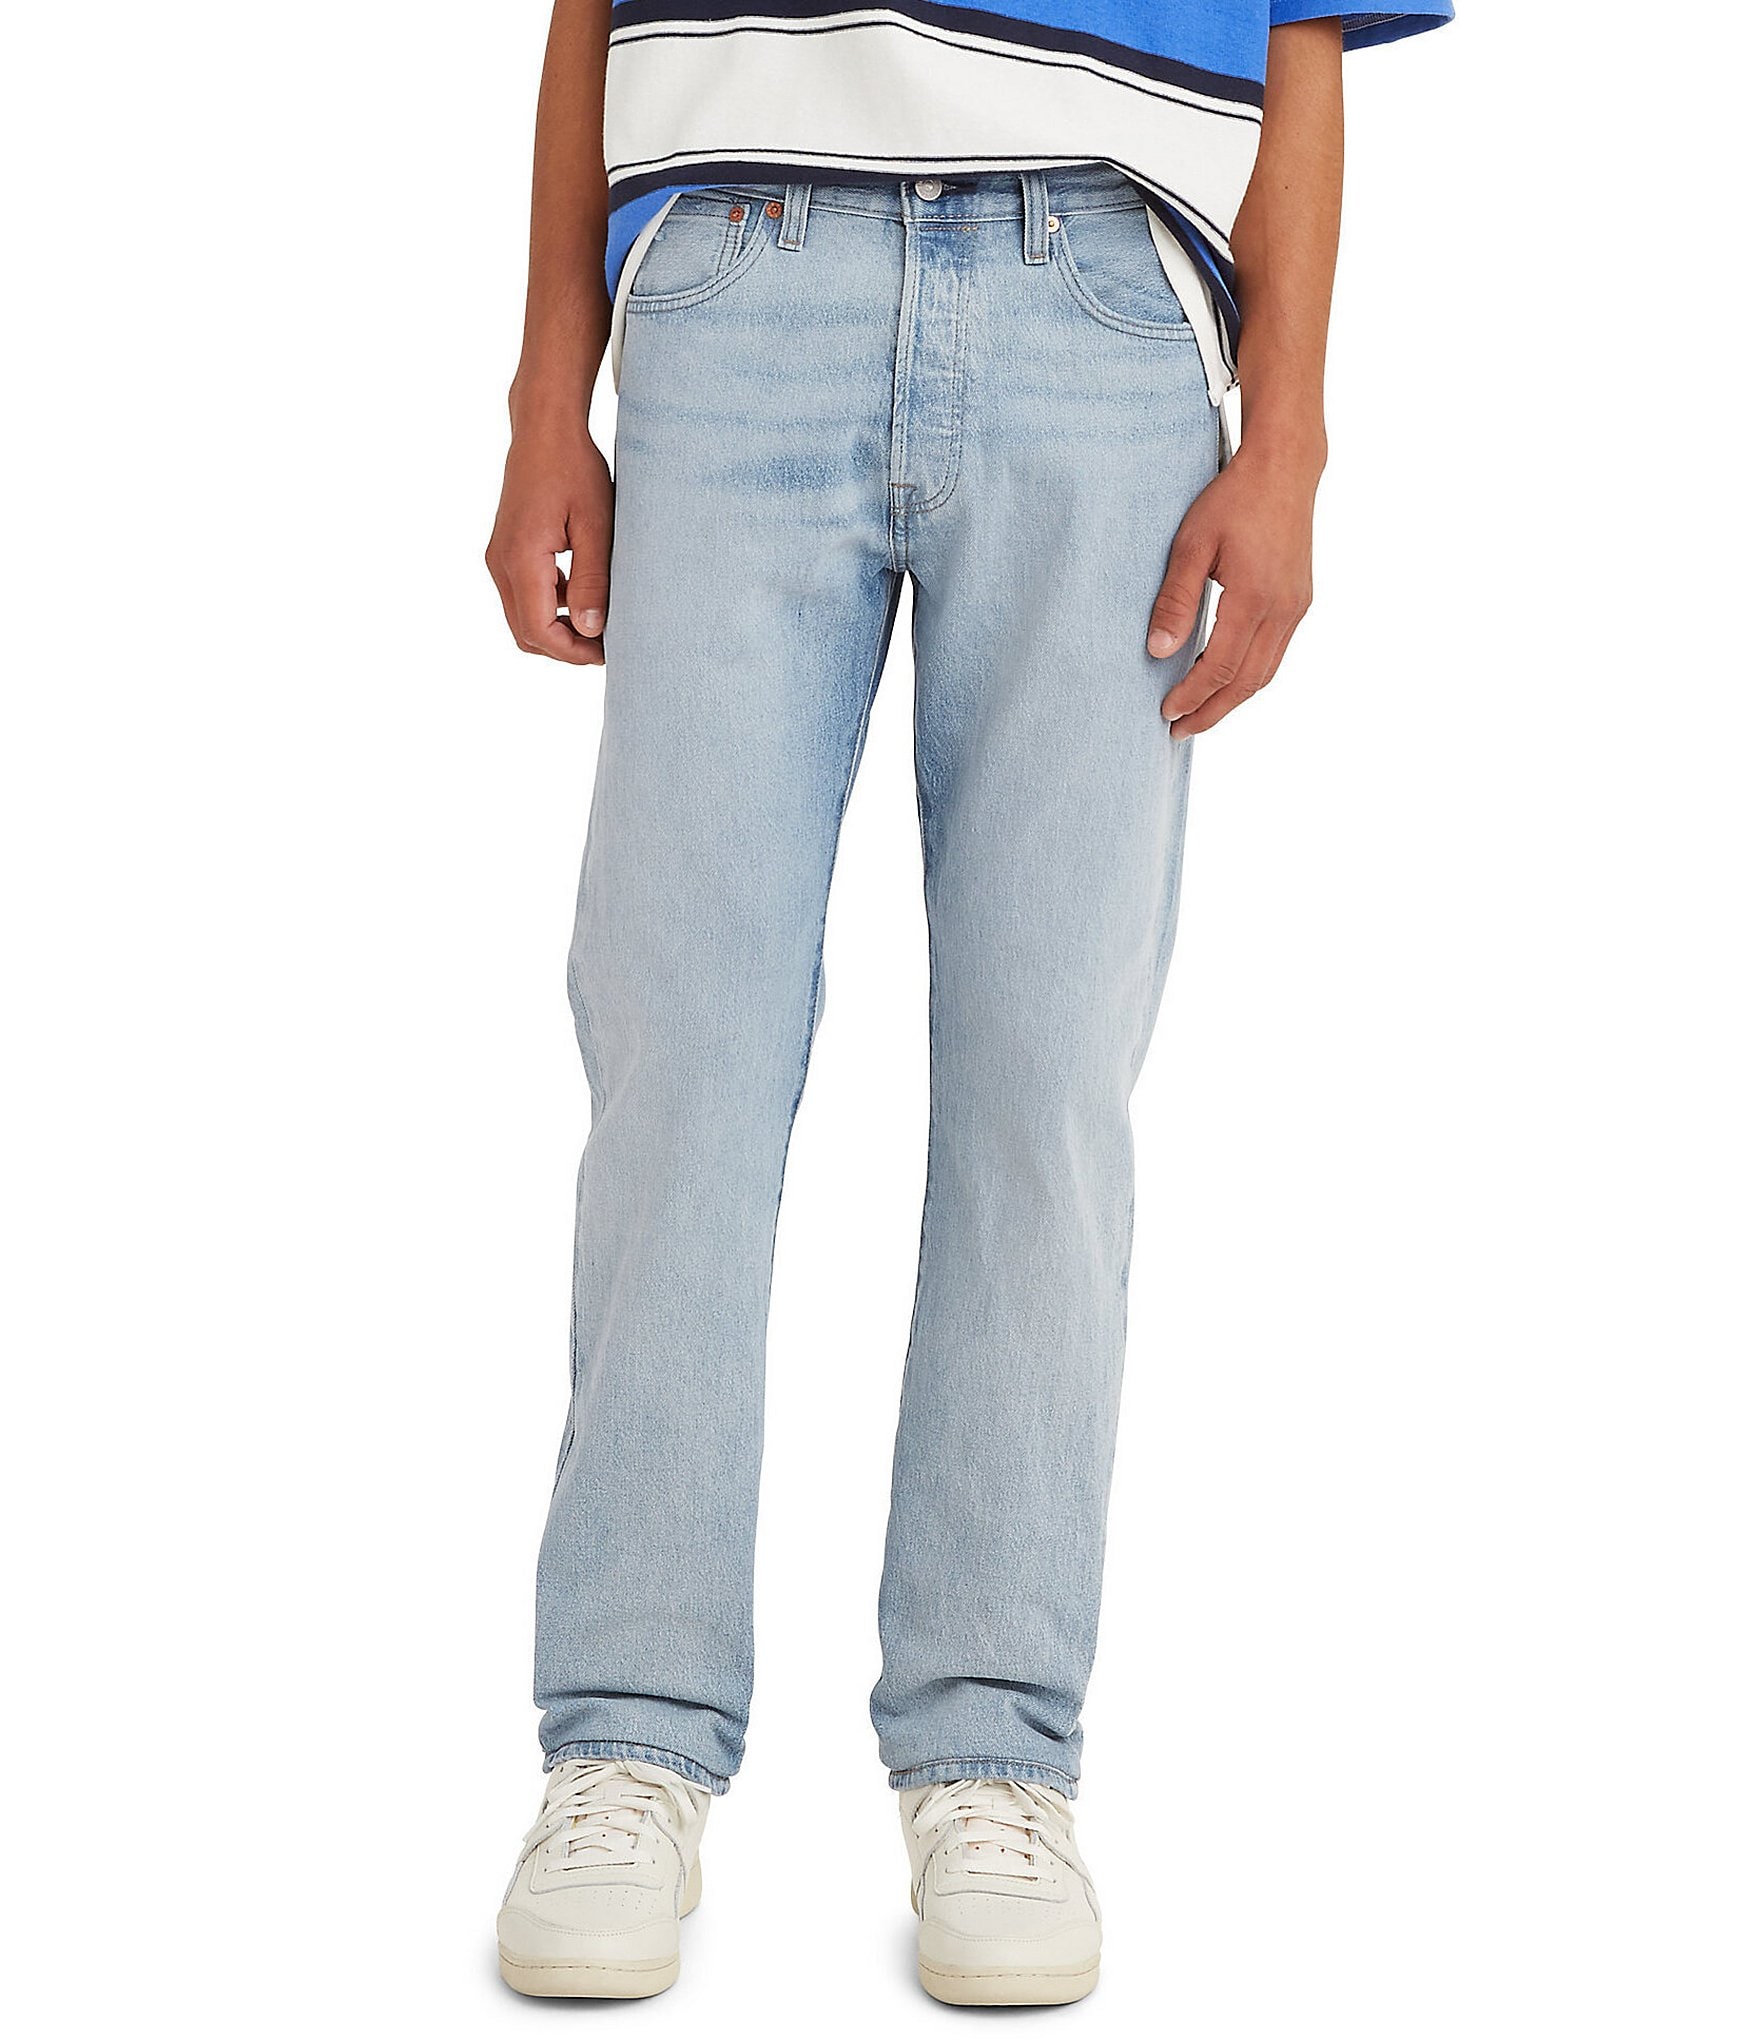 Levi's® 501® Original Fit Damaged Jeans